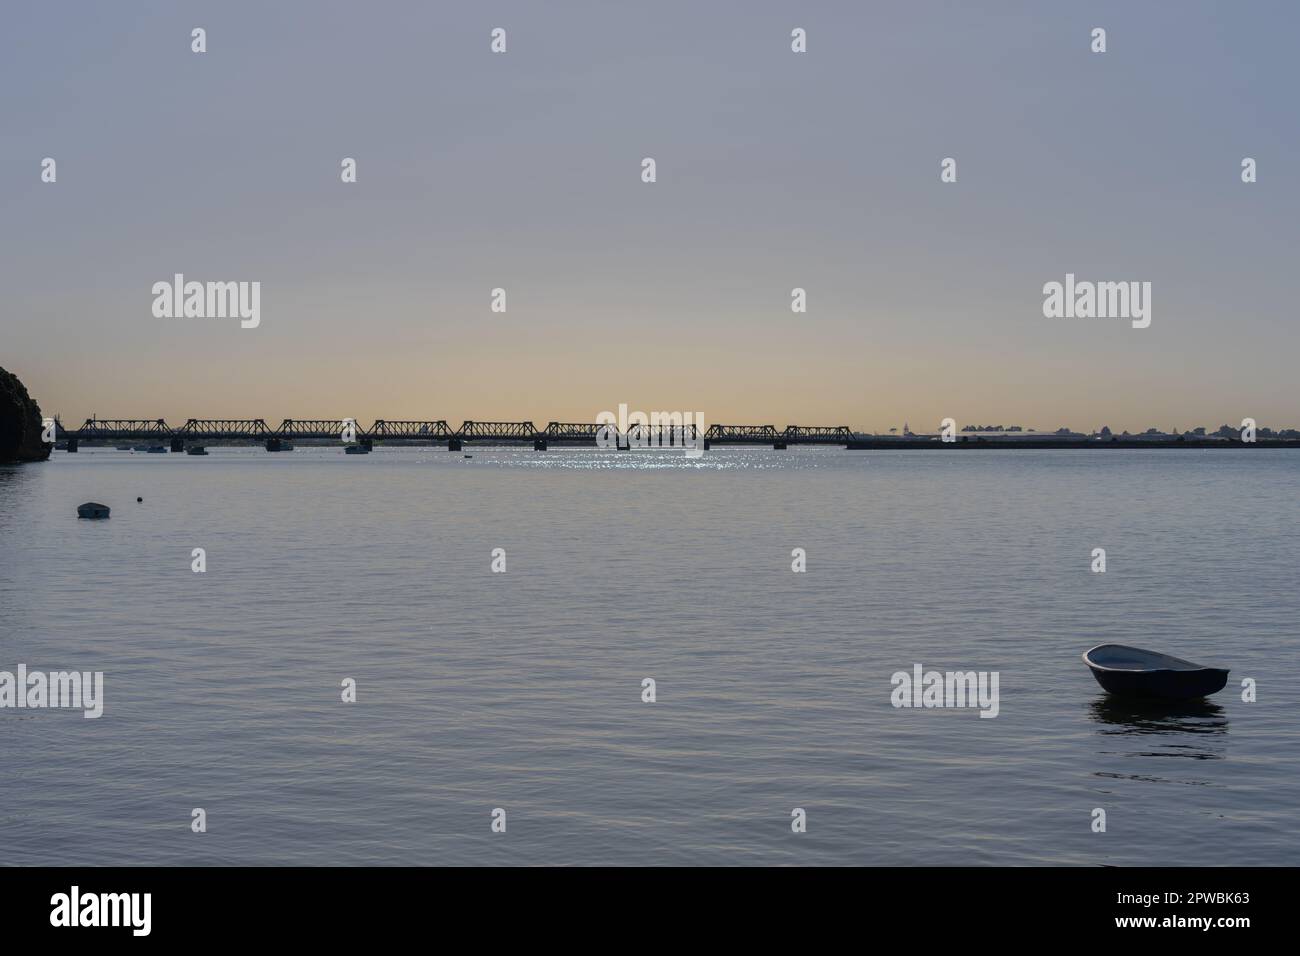 Crepúsculo sobre el puerto de Tauranga con el truss distante del puente ferroviario cielo azul pálido y ligero tono dorado en el horizonte Foto de stock